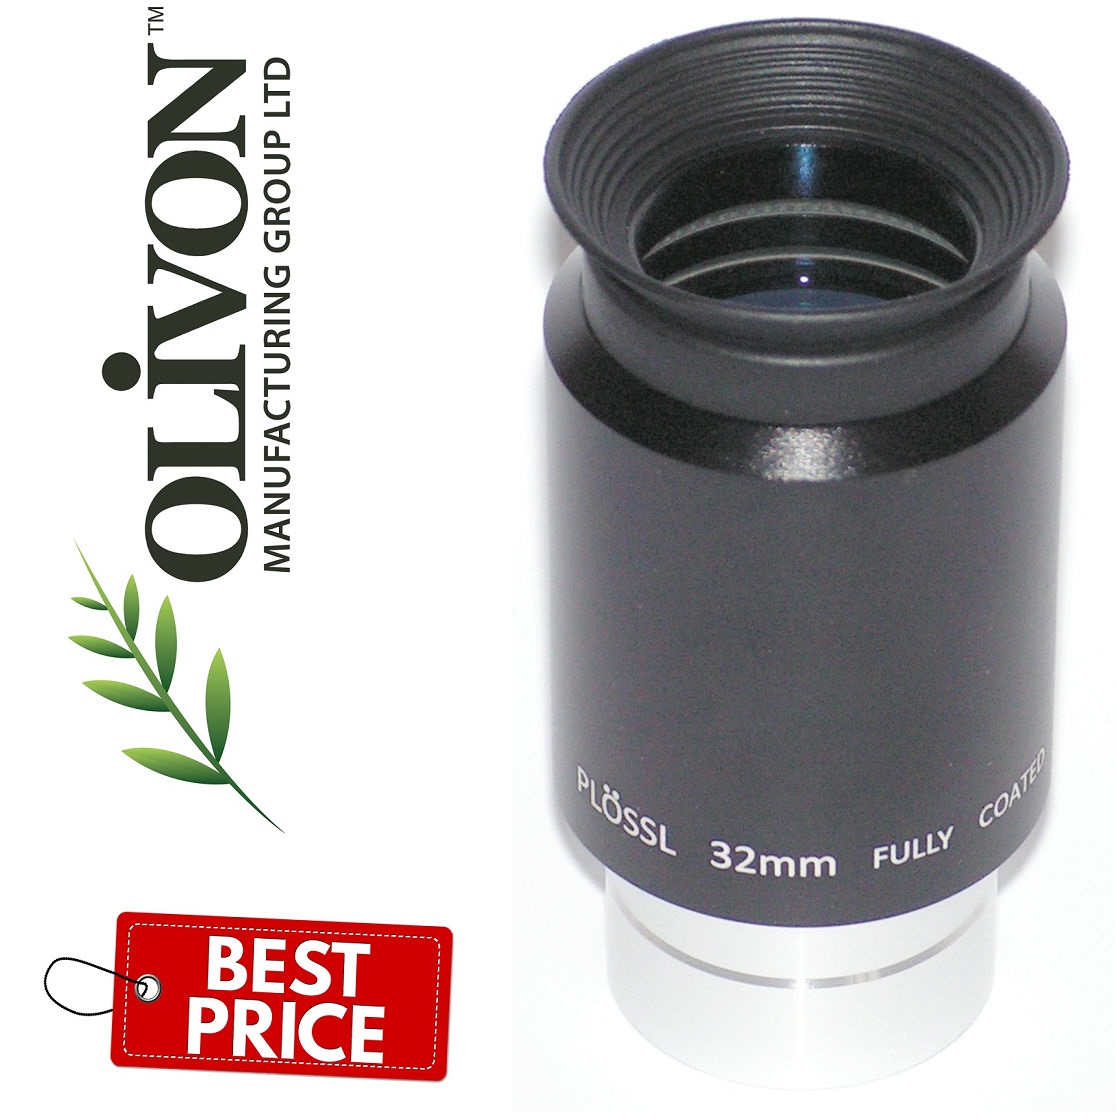 Olivon Plossl Eyepiece 32mm (1.25